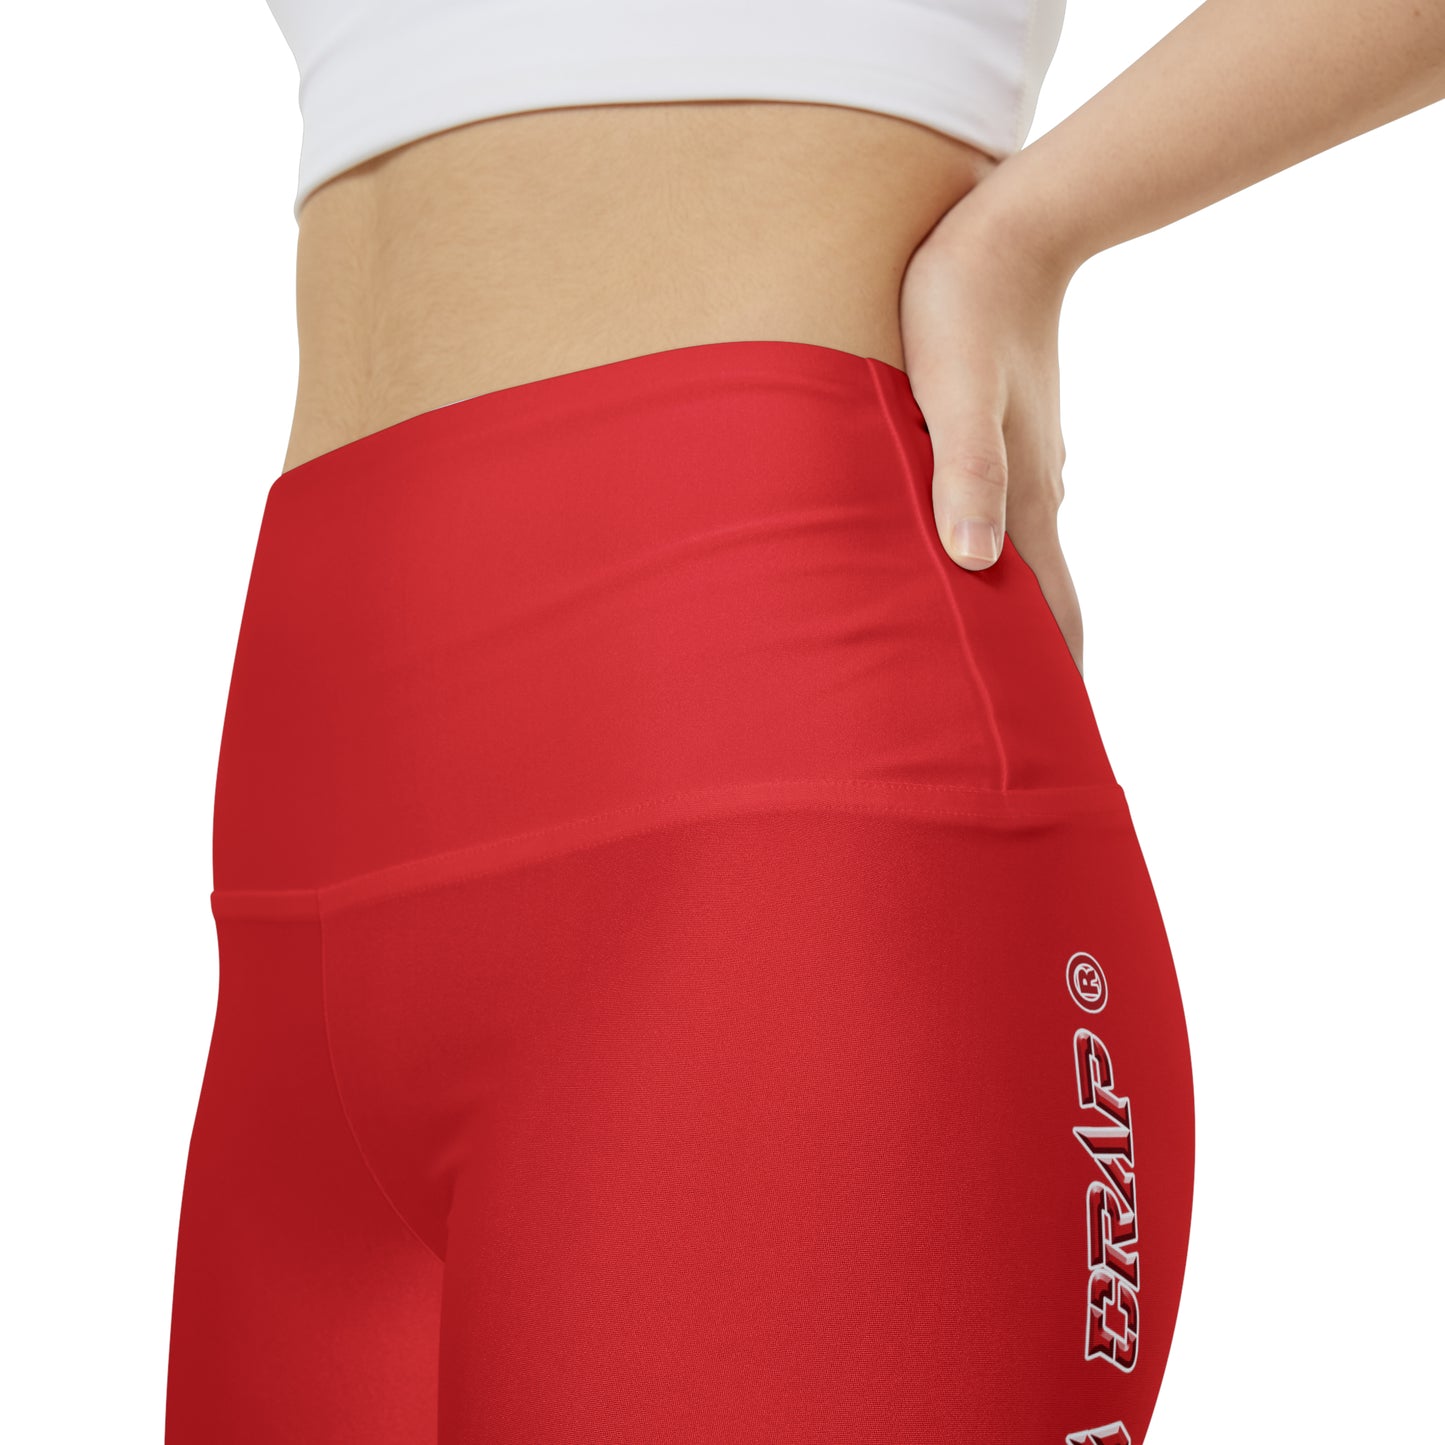 Premium Crap WorkoutWit Shorts - Red